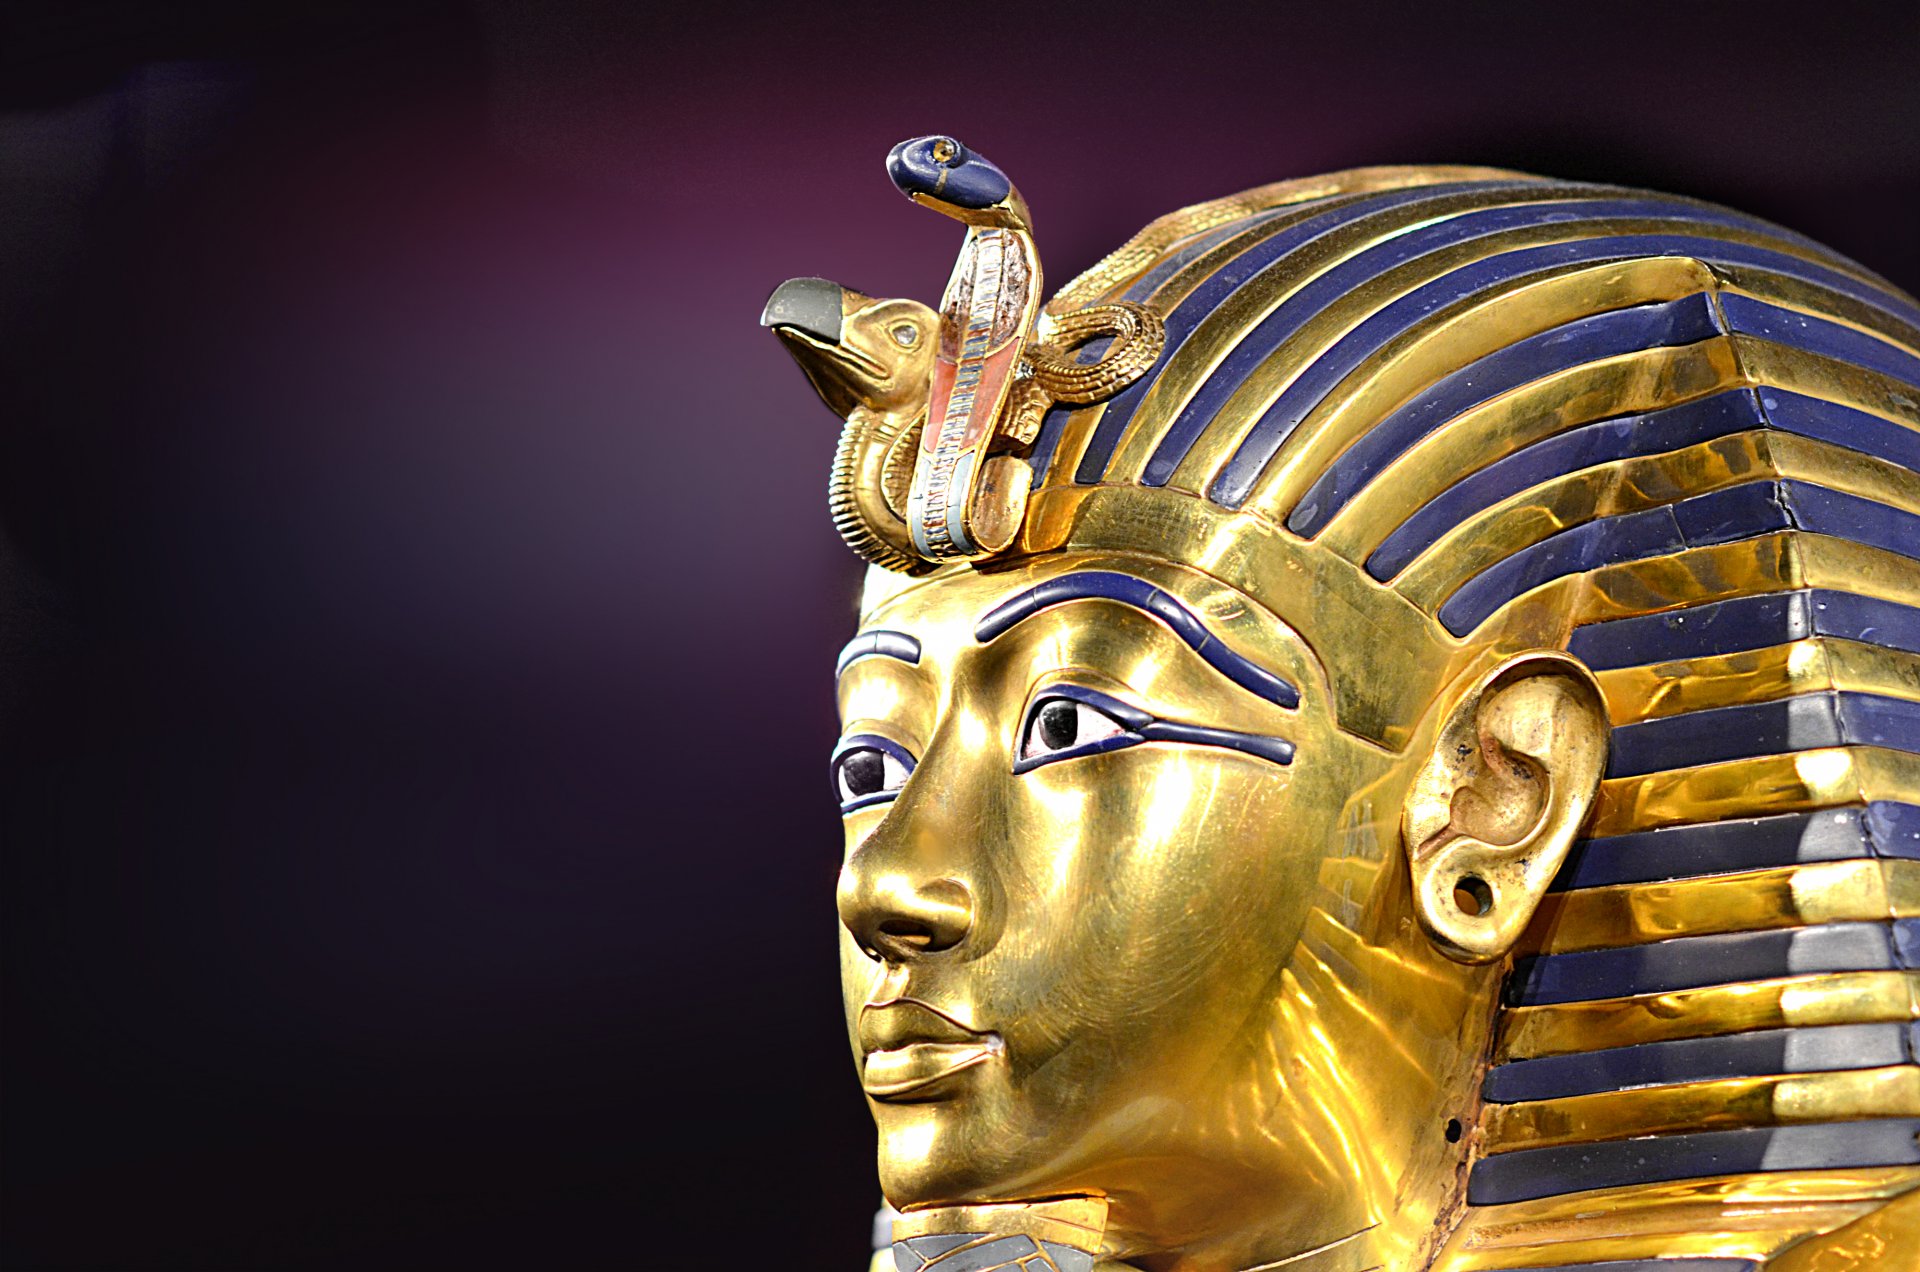 Доклад про фараонов древнего египта - описание и жизнь правителей